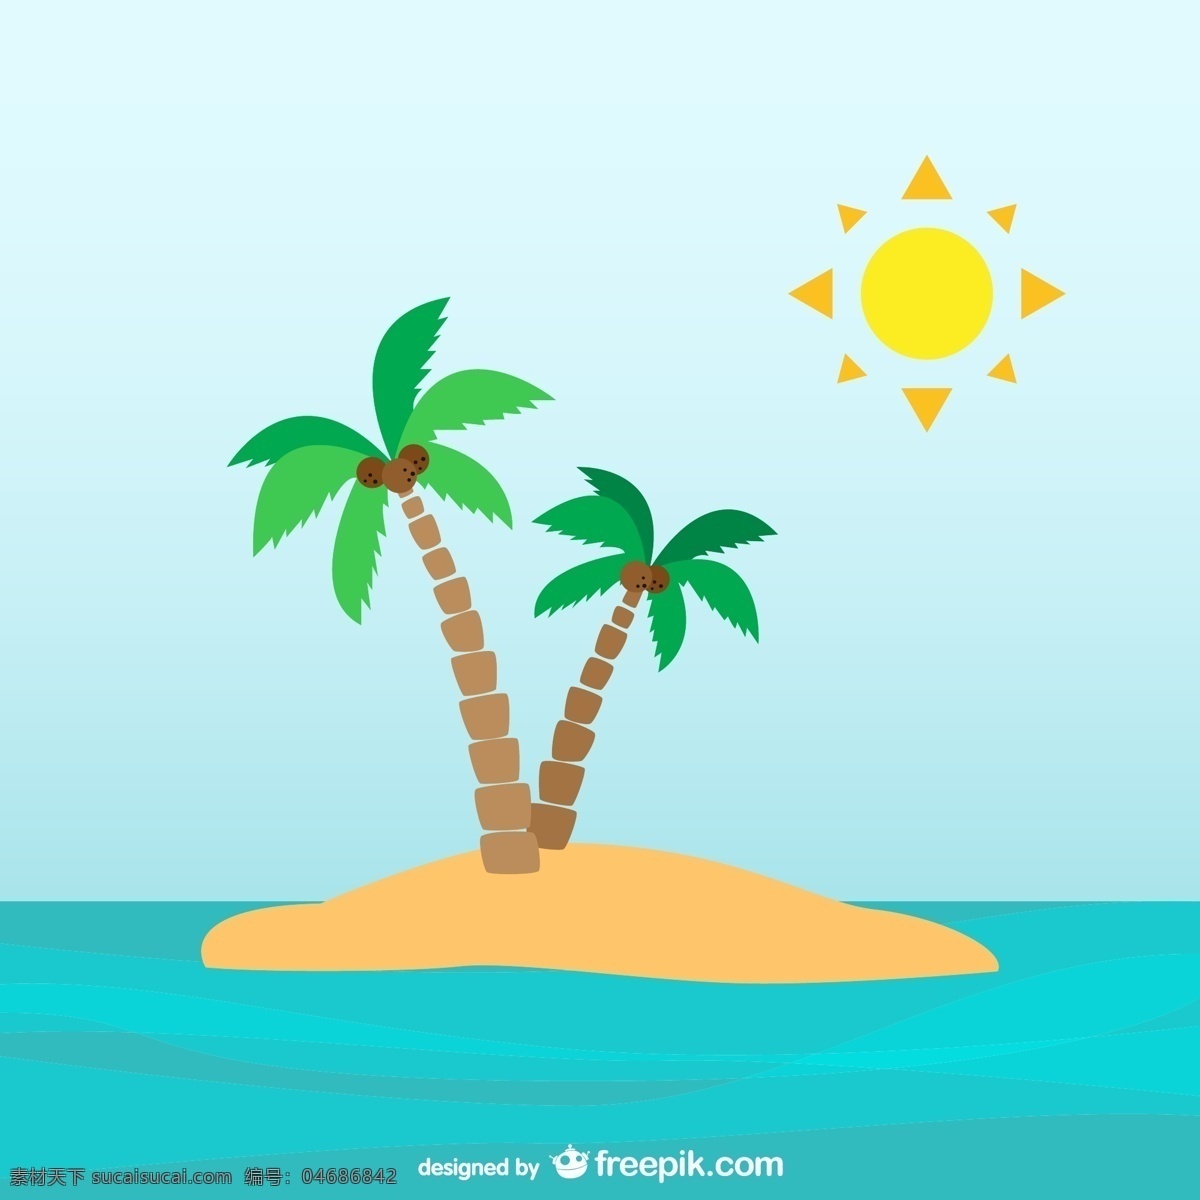 棕榈树 荒岛 上 树 夏天 水 旅游 太阳 自然 海洋 树叶 节日 树木 植物 热带 夏威夷 棕榈 沙漠 青色 天蓝色